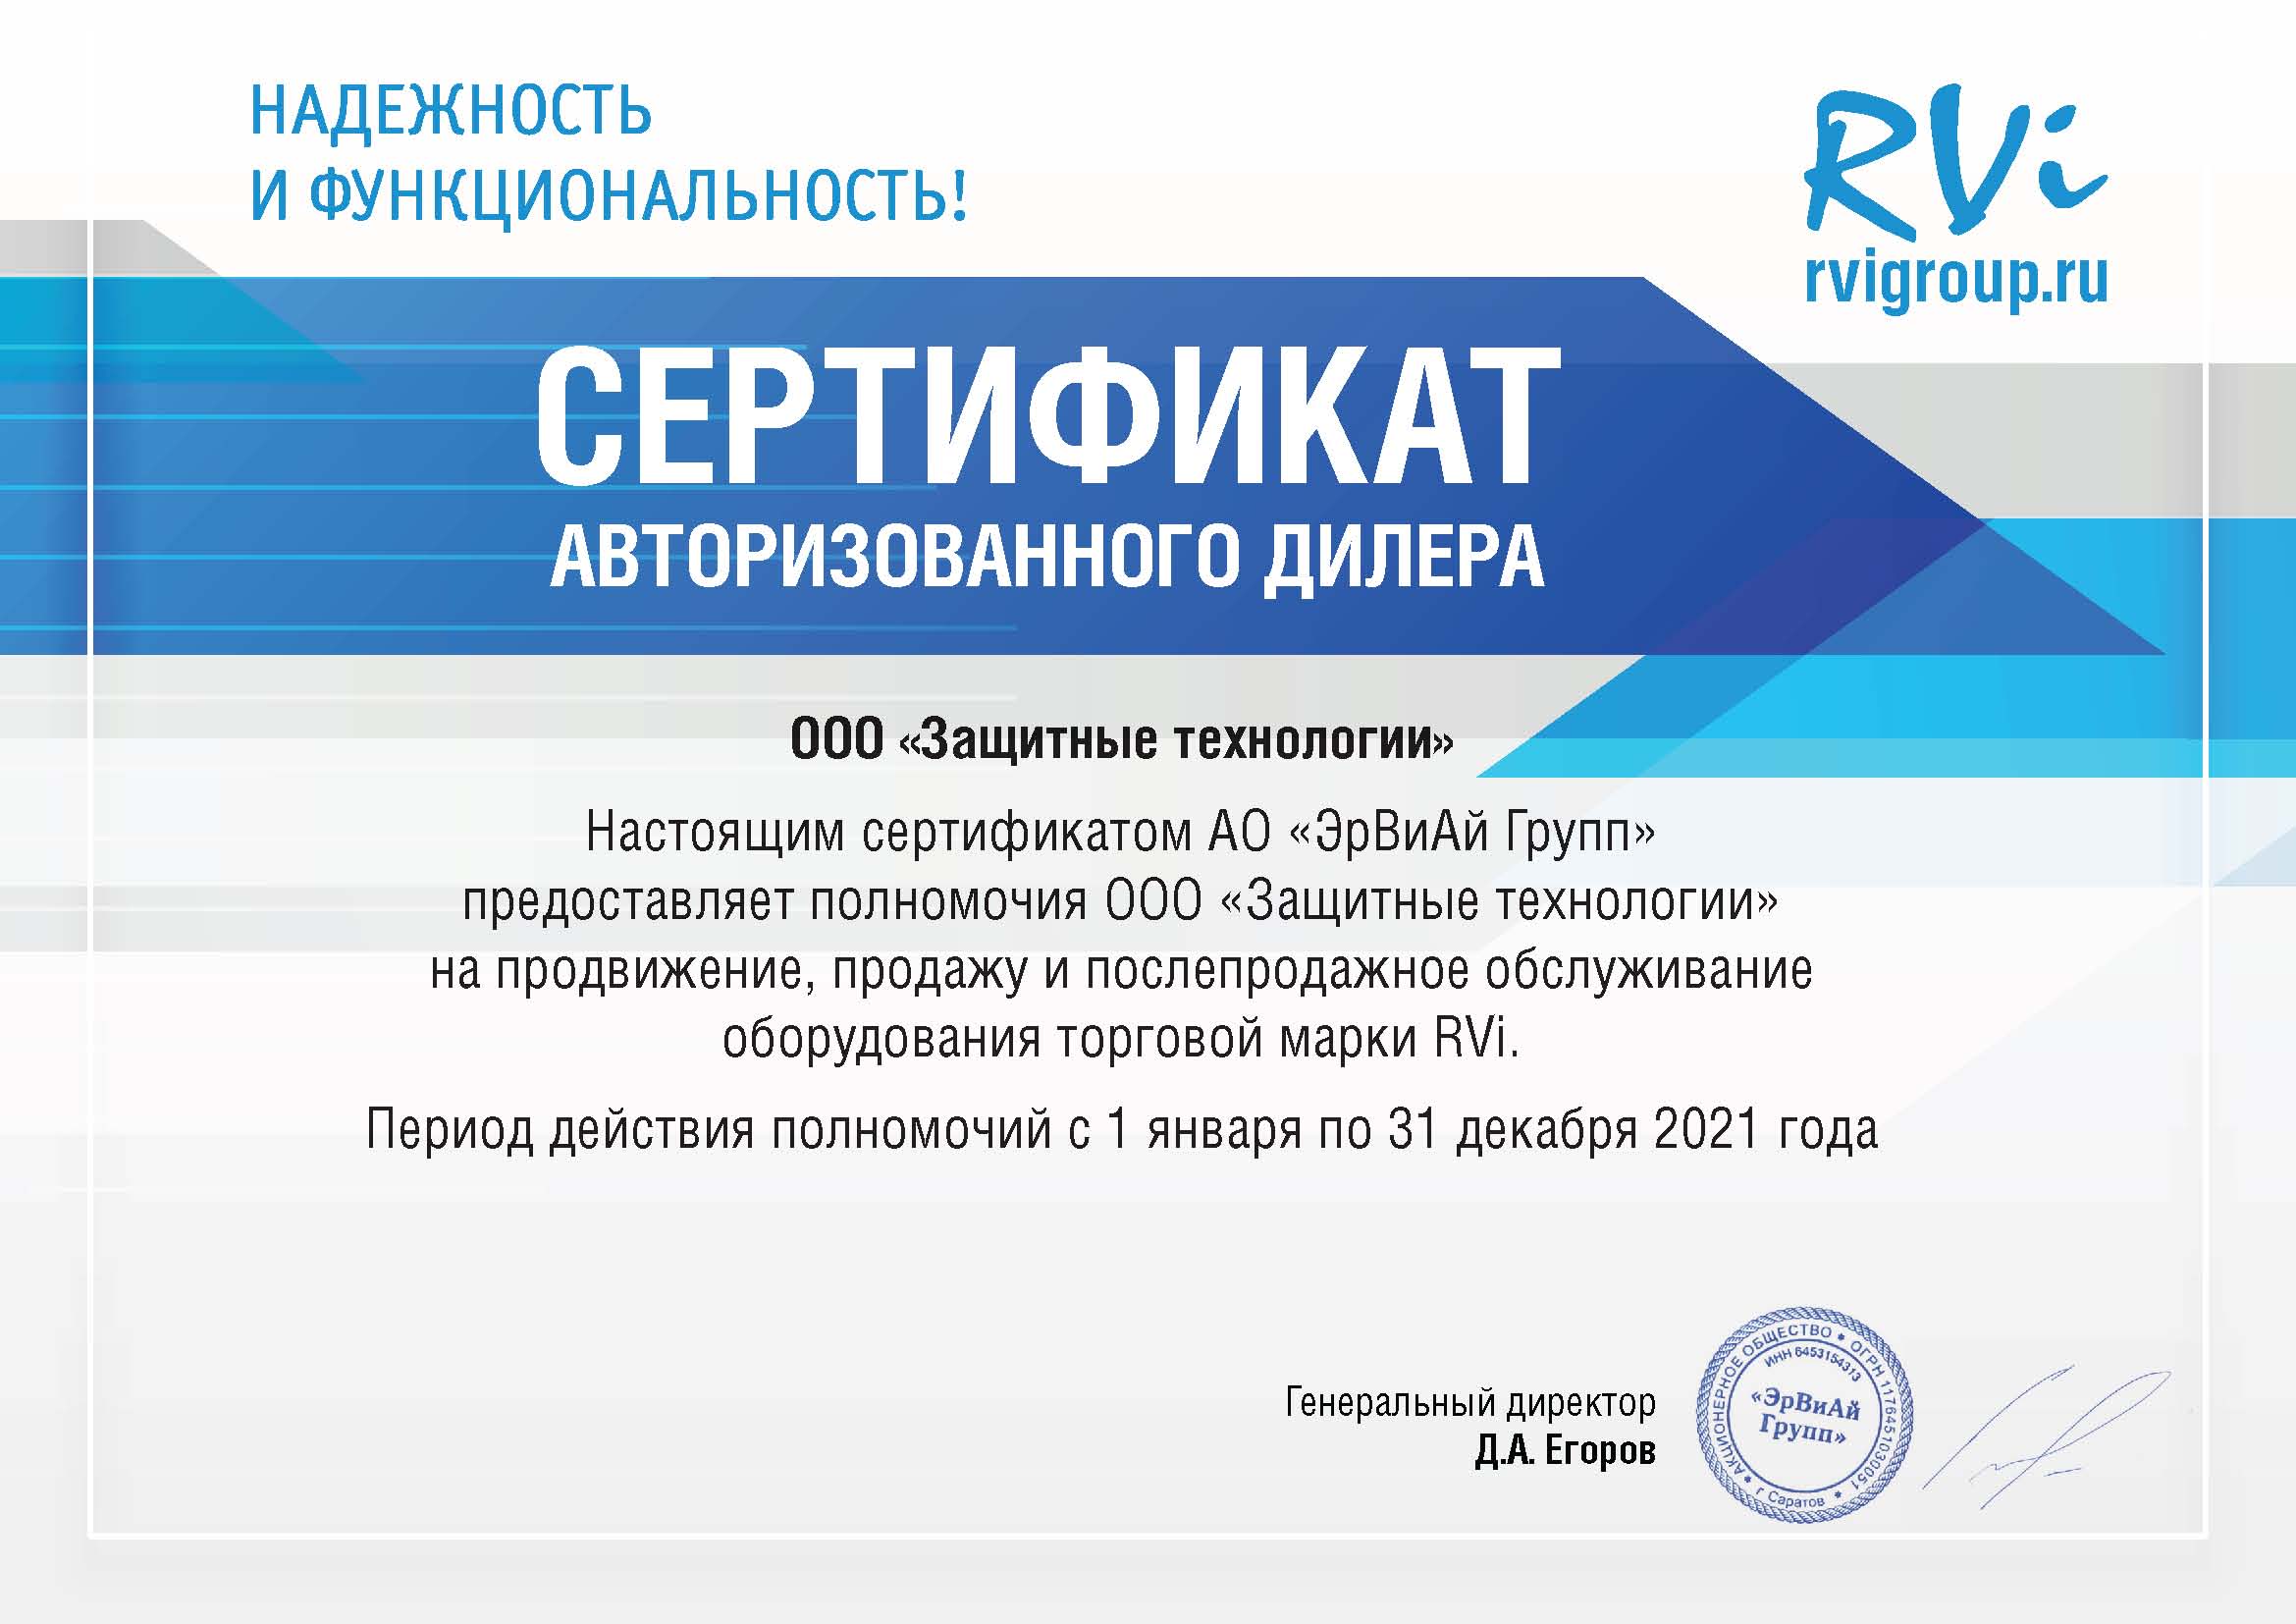 Сертификат авторизованного дилера RVi 2021